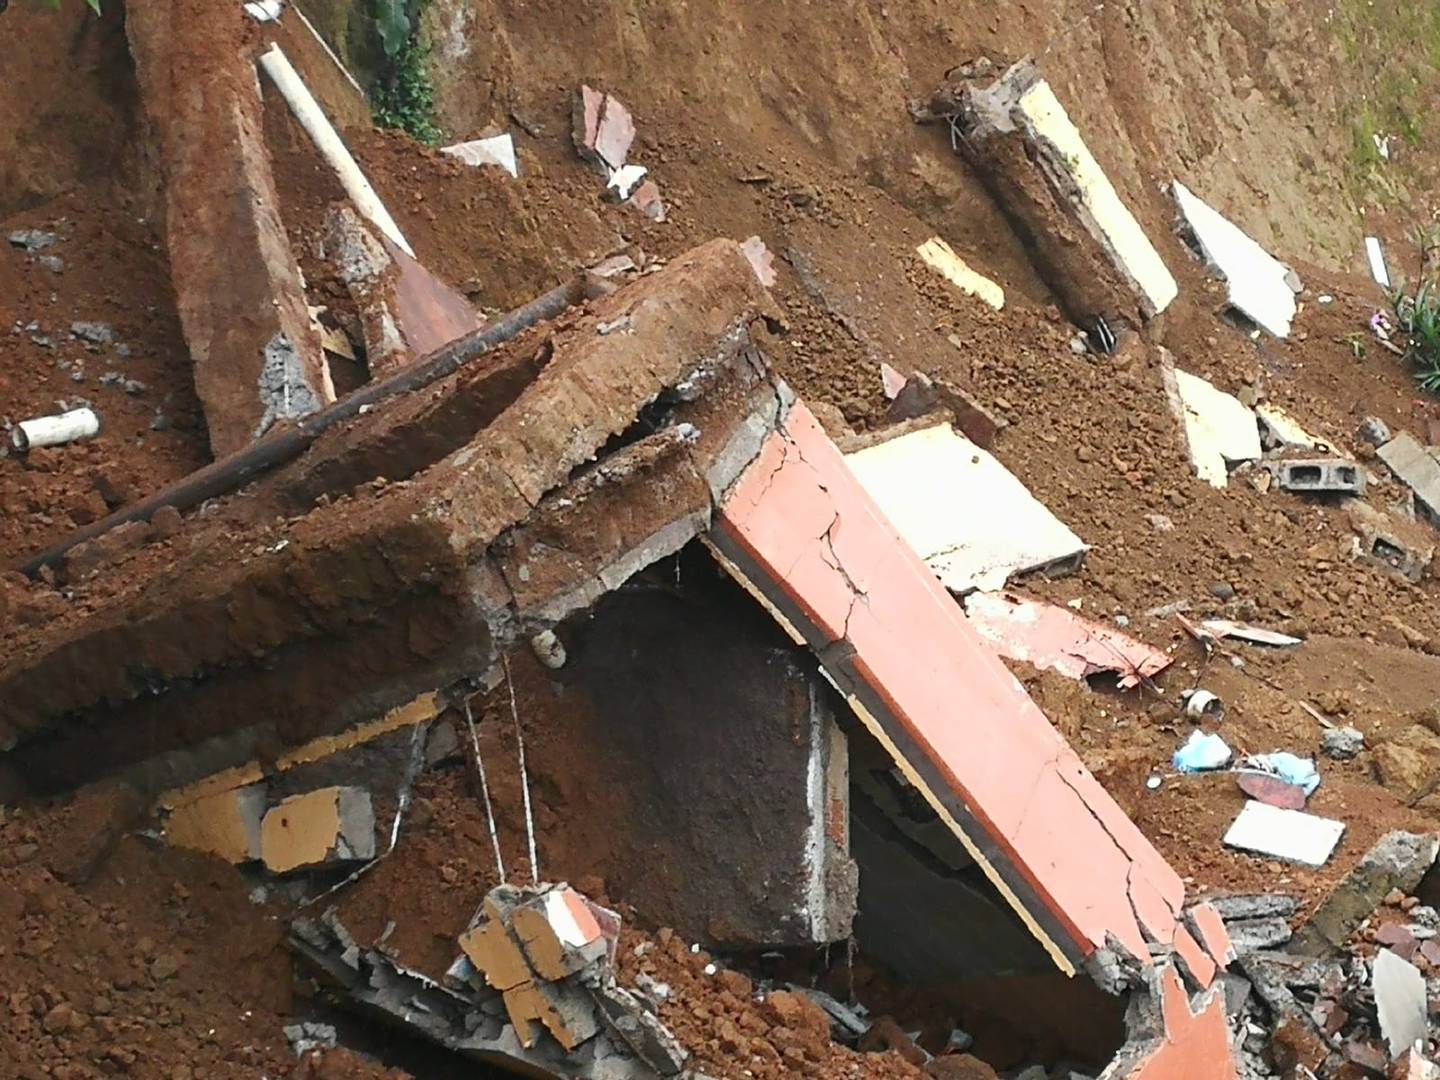 El jueves esta casa desalojada desde el 2020 apareció en el fondo del barranco. Tres dias antes, otra más grande también colapso y se vino desde el borde del deslizamiento en Valladolid de Desamparados. Foto: Marisol Salguero.